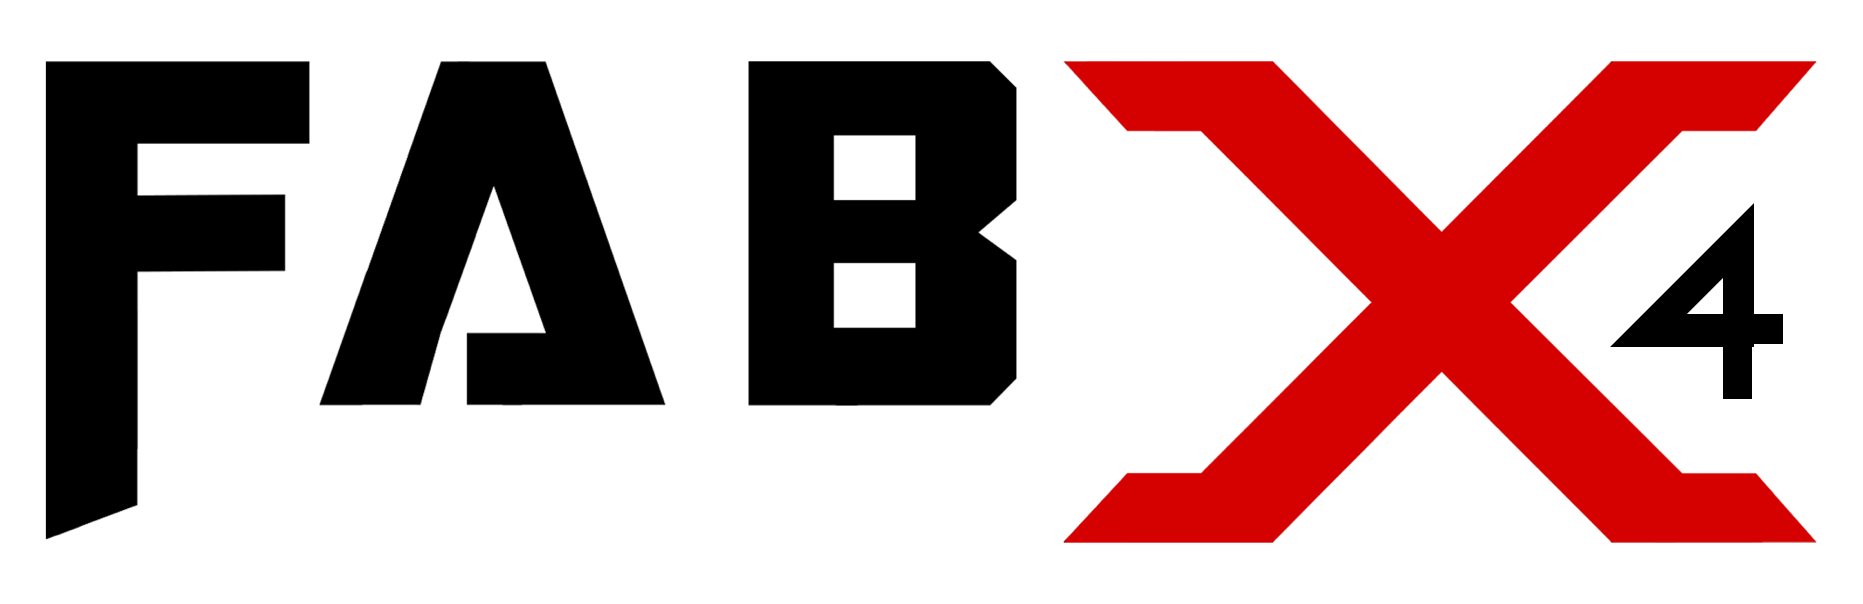 FabX 4 logo India